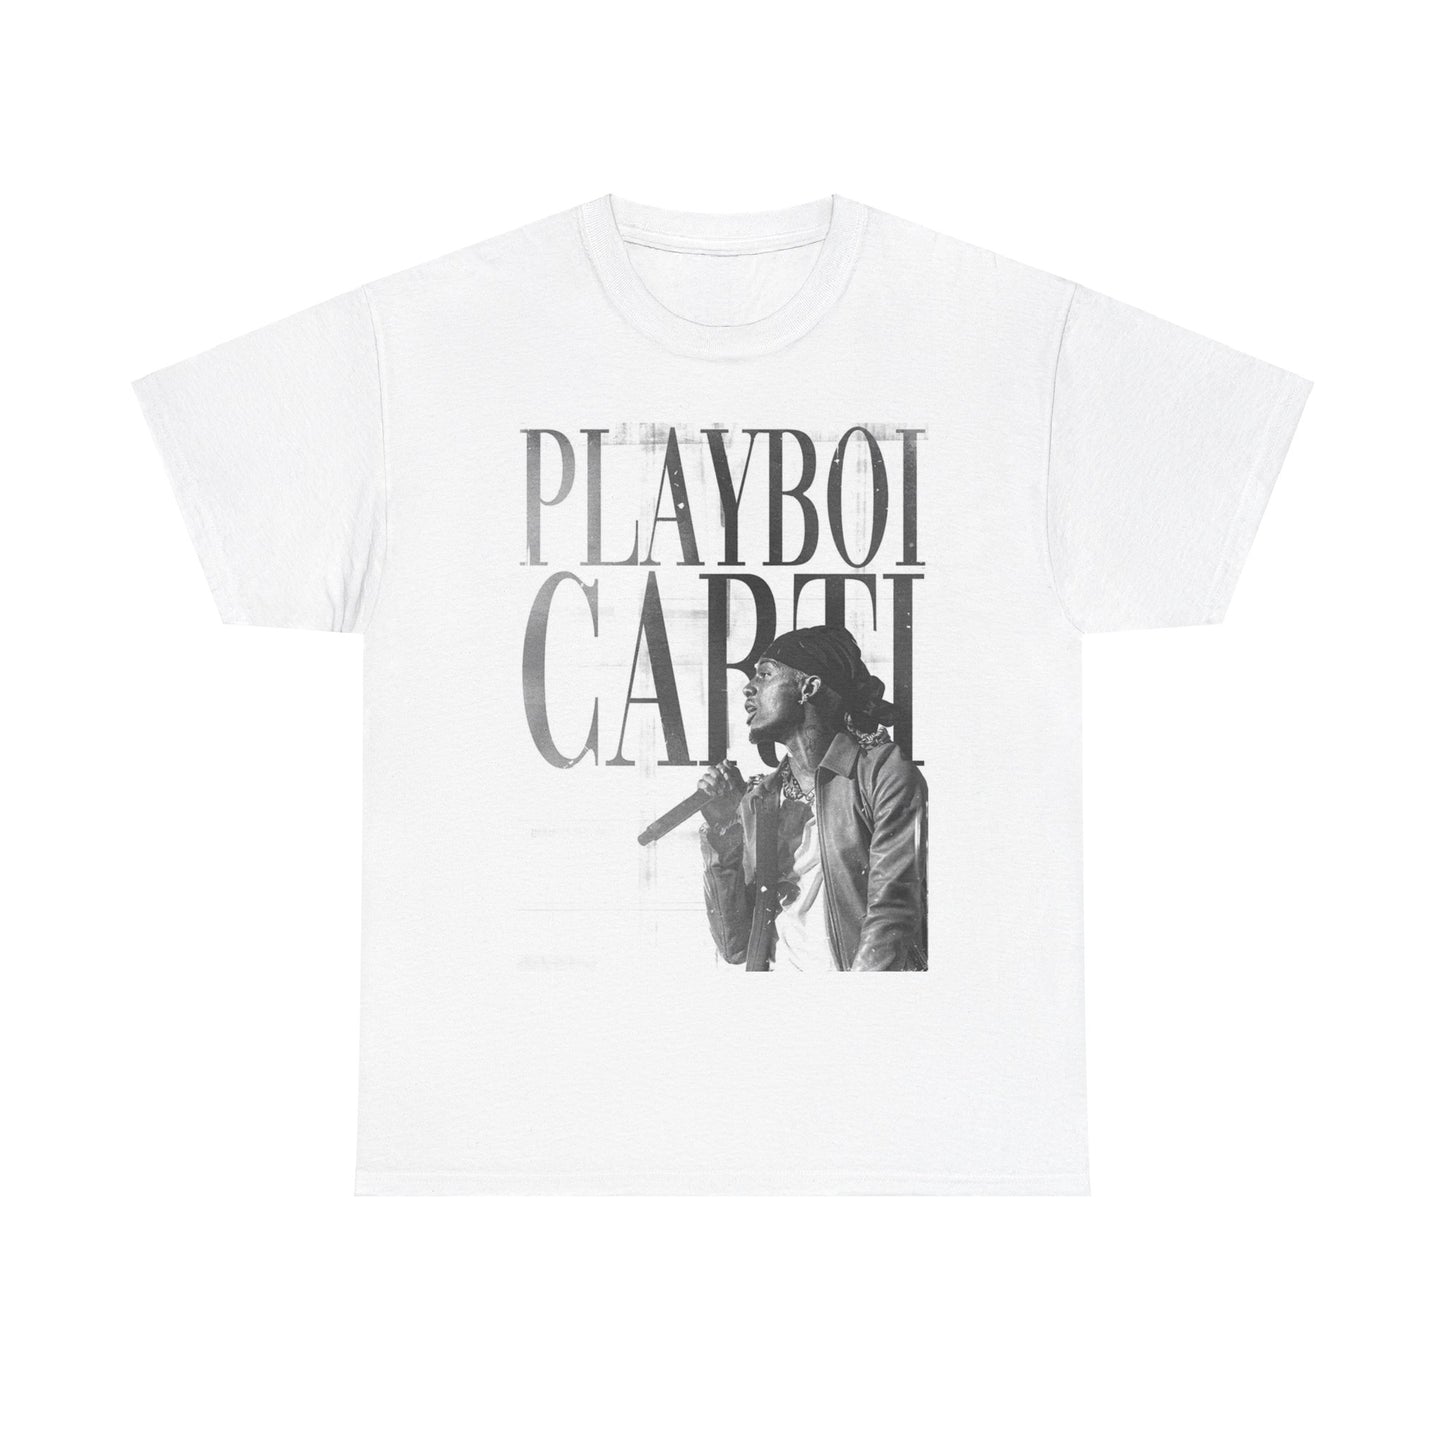 PLAYBOI CARTI T-shirt